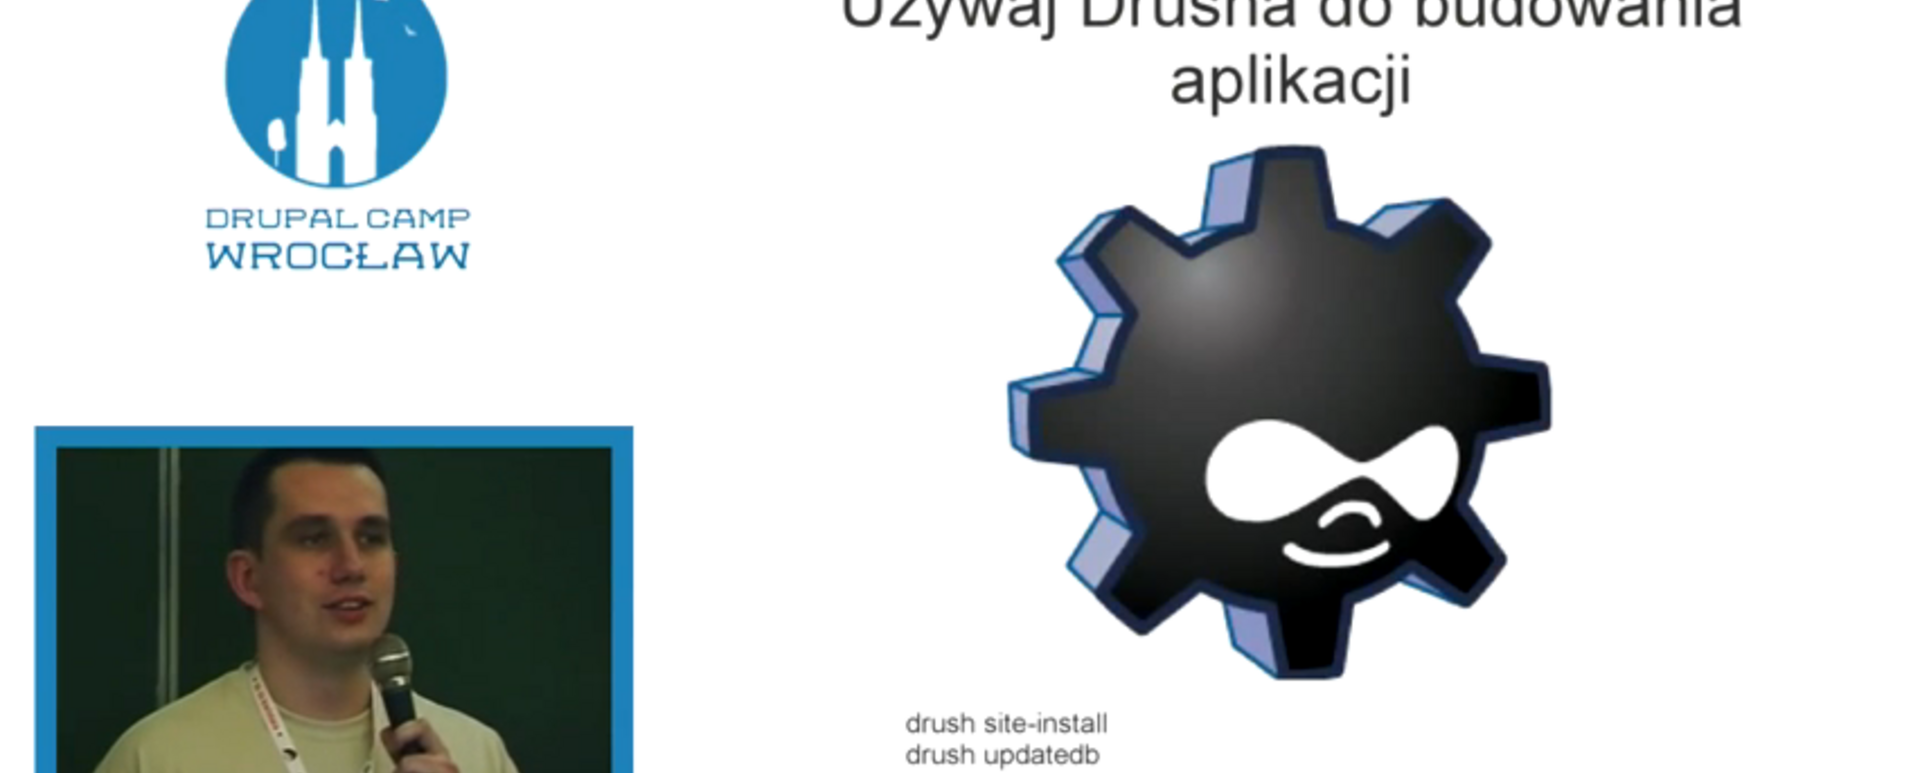 Automatyzacja w tworzeniu aplikacji opartych o Drupala - Grzegorz Bartman - DrupalCamp Wrocław 2013 